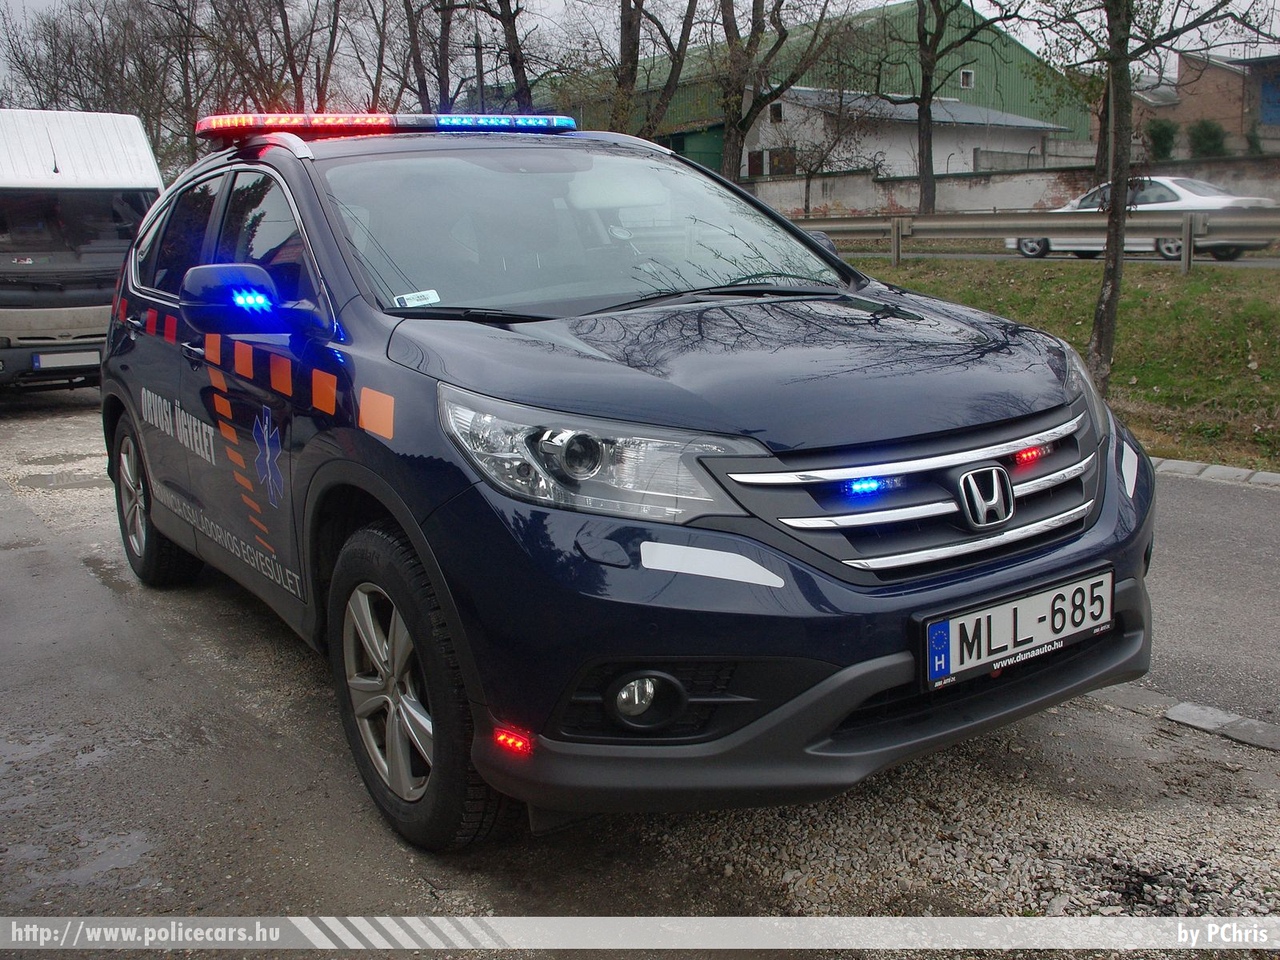 Honda CR-V, Vác, orvosi ügyelet, Provincia Családorvos Egyesület, fotó: PChris
Keywords: magyar Magyarország mentő mentőautó Hungary hungarian ambulance MLL-685